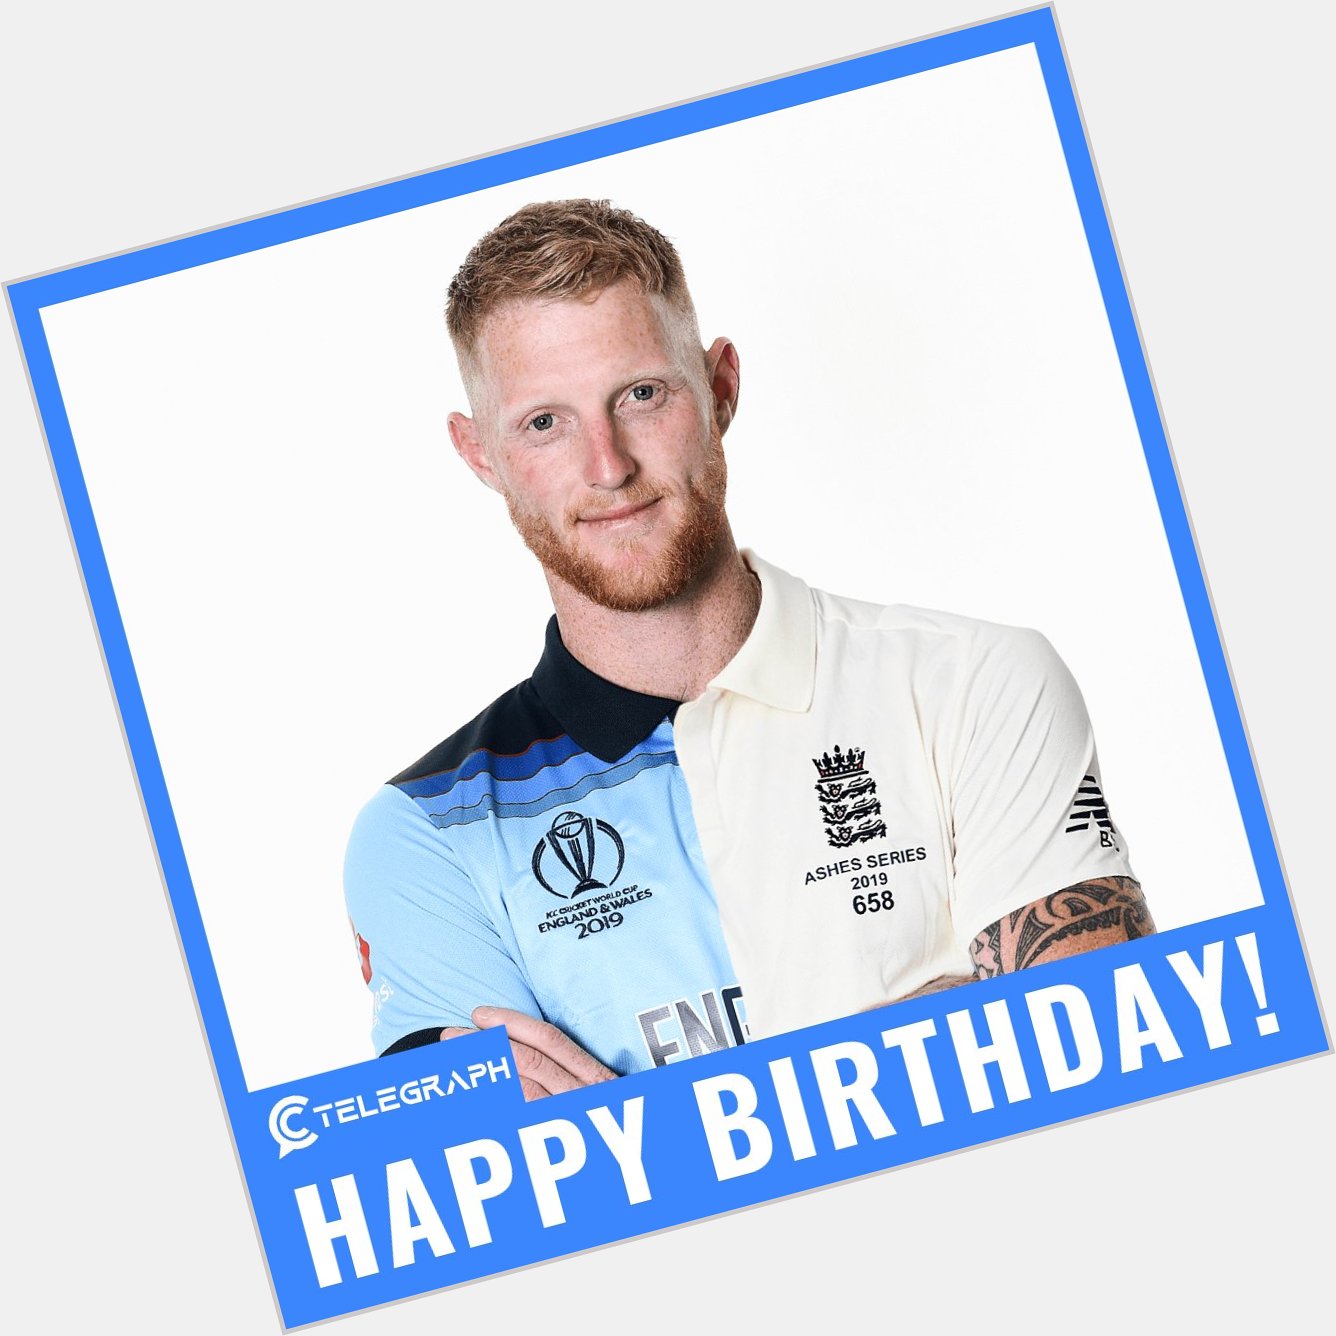 Happy Birthday to England\s Test captain, Ben Stokes 